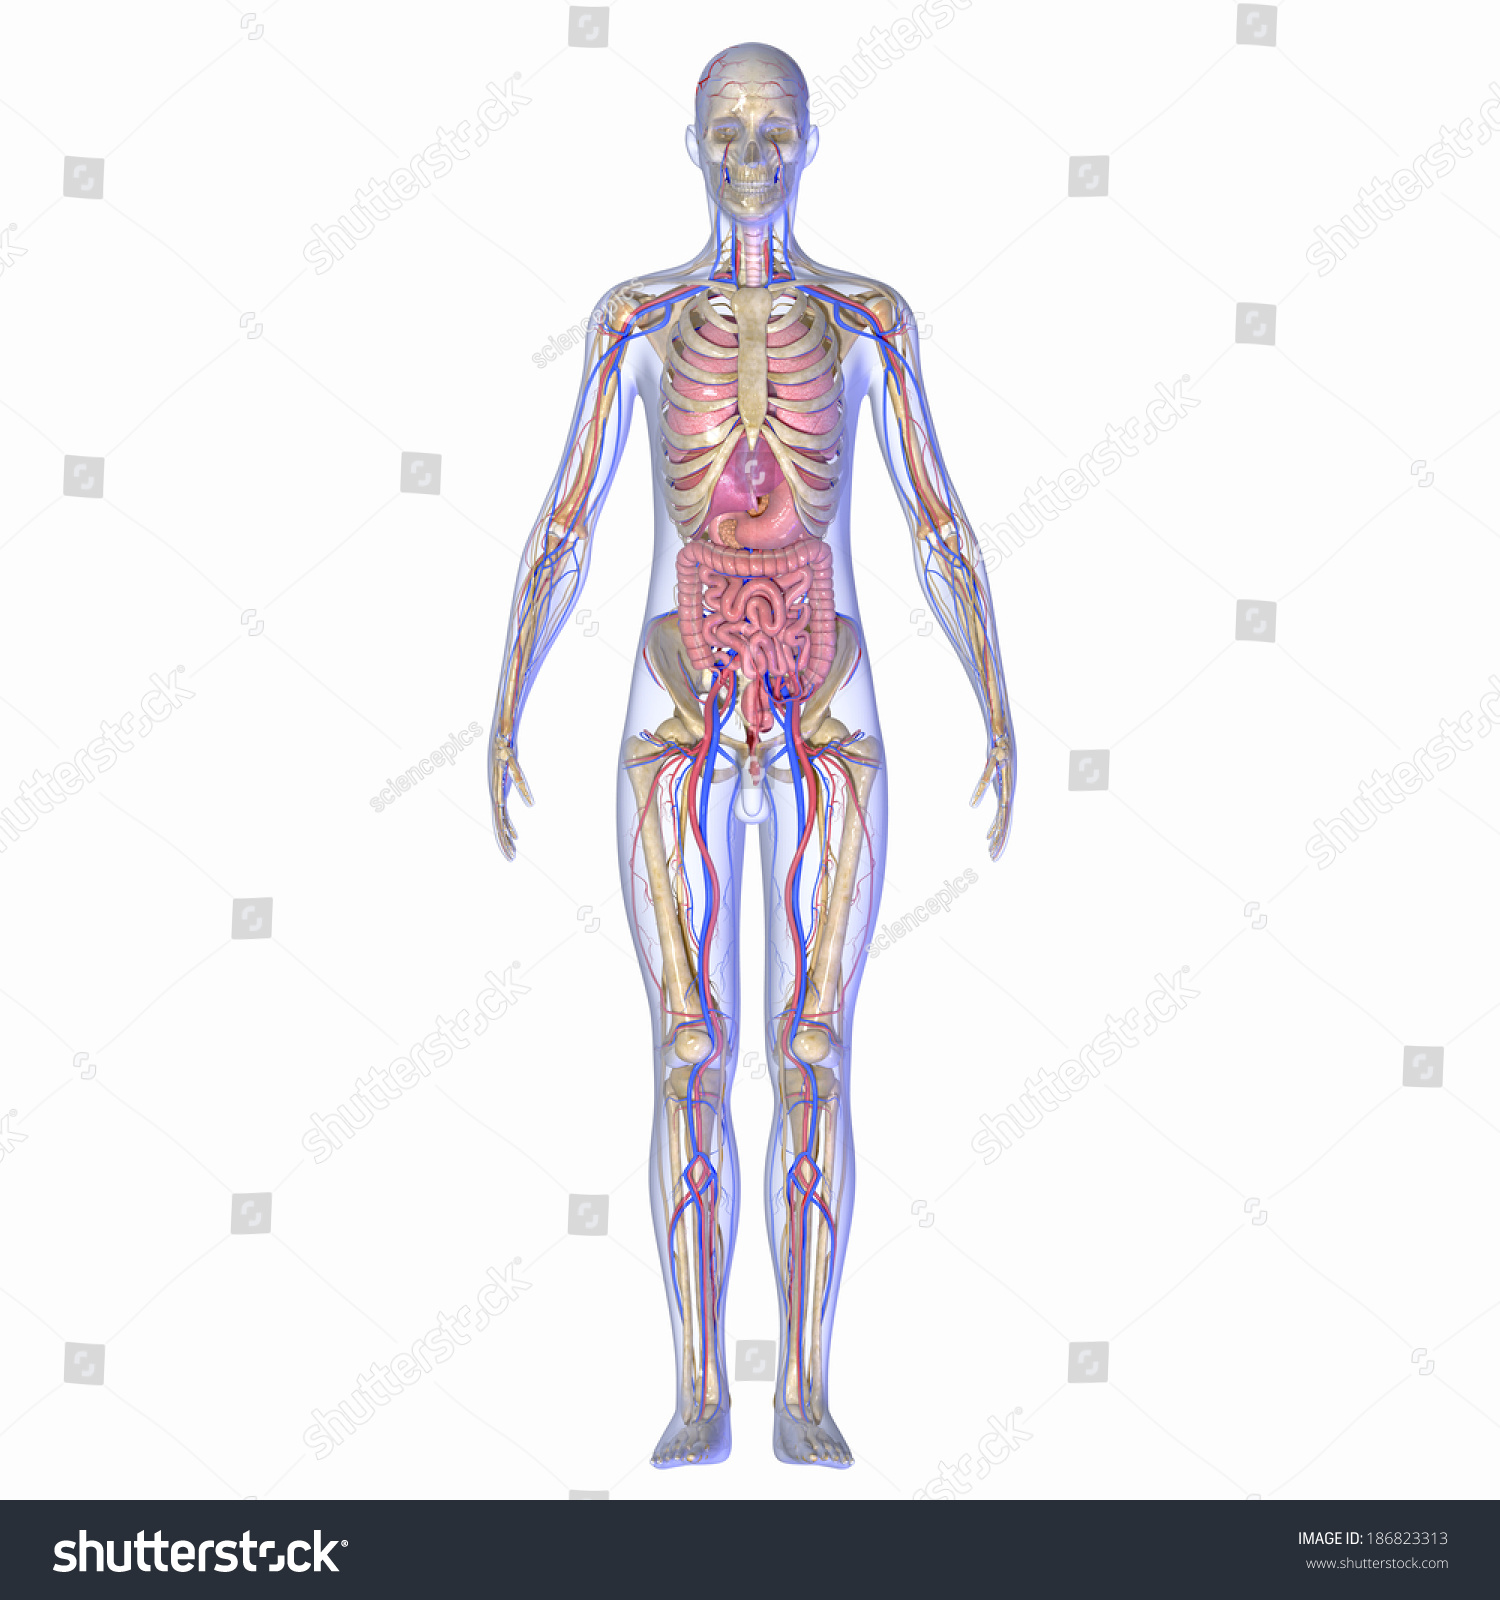 Human Anatomy Stock Photo 186823313 : Shutterstock